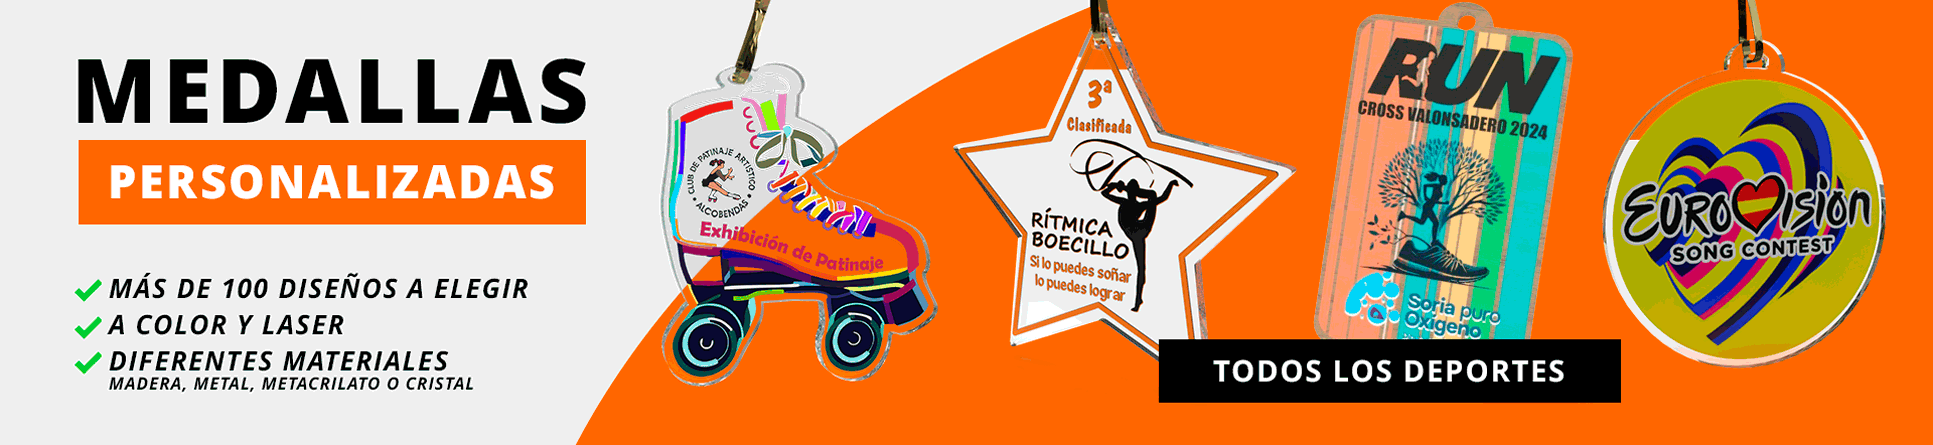 Medallas personalizadas en Trofeos Romero